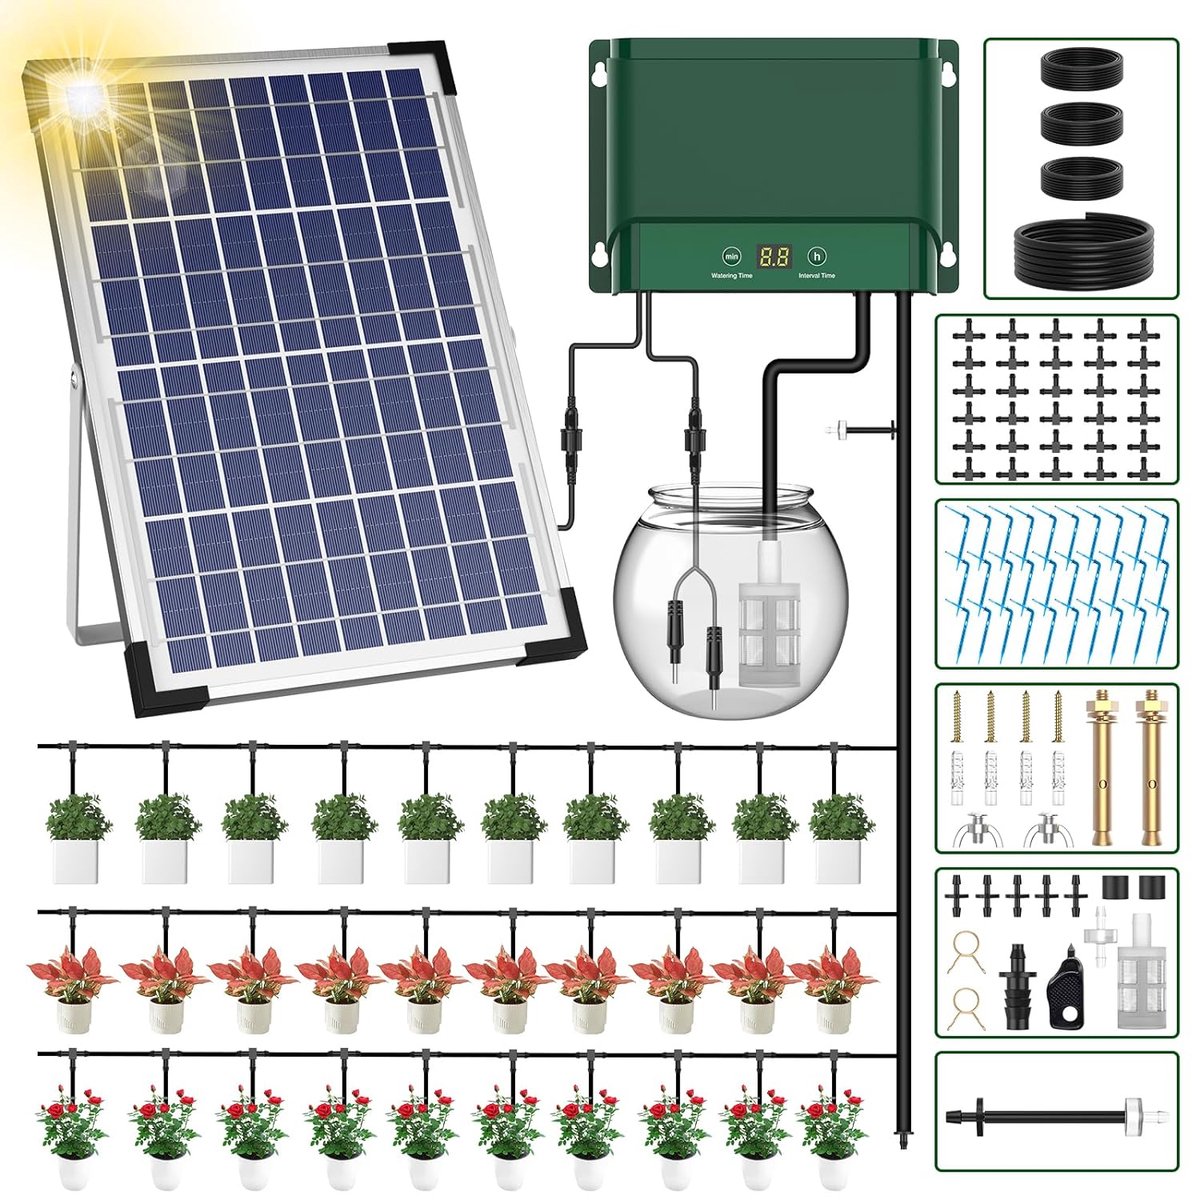 Waterdruppelaar - Irrigatiesysteem - Bewateringssysteem - Zonne Energie - Automatisch Watergeefsysteem met USB-voeding - LED-display - Merkloos